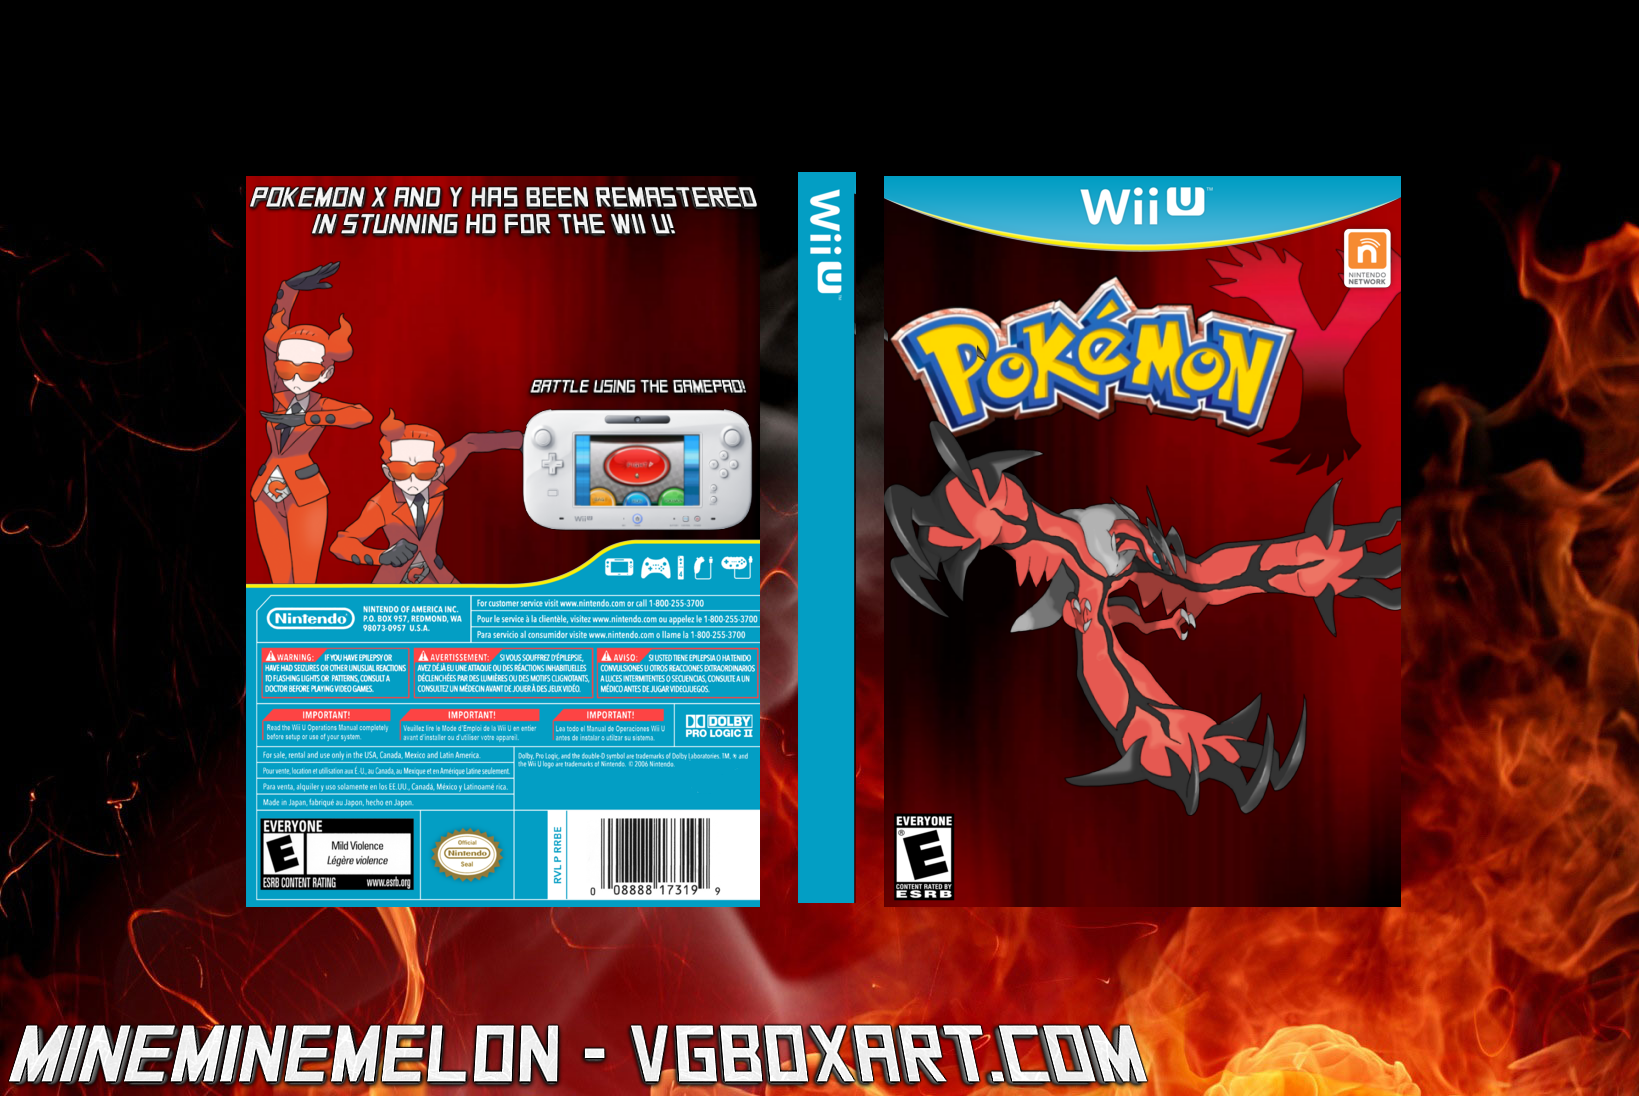 Pokemon Y box cover